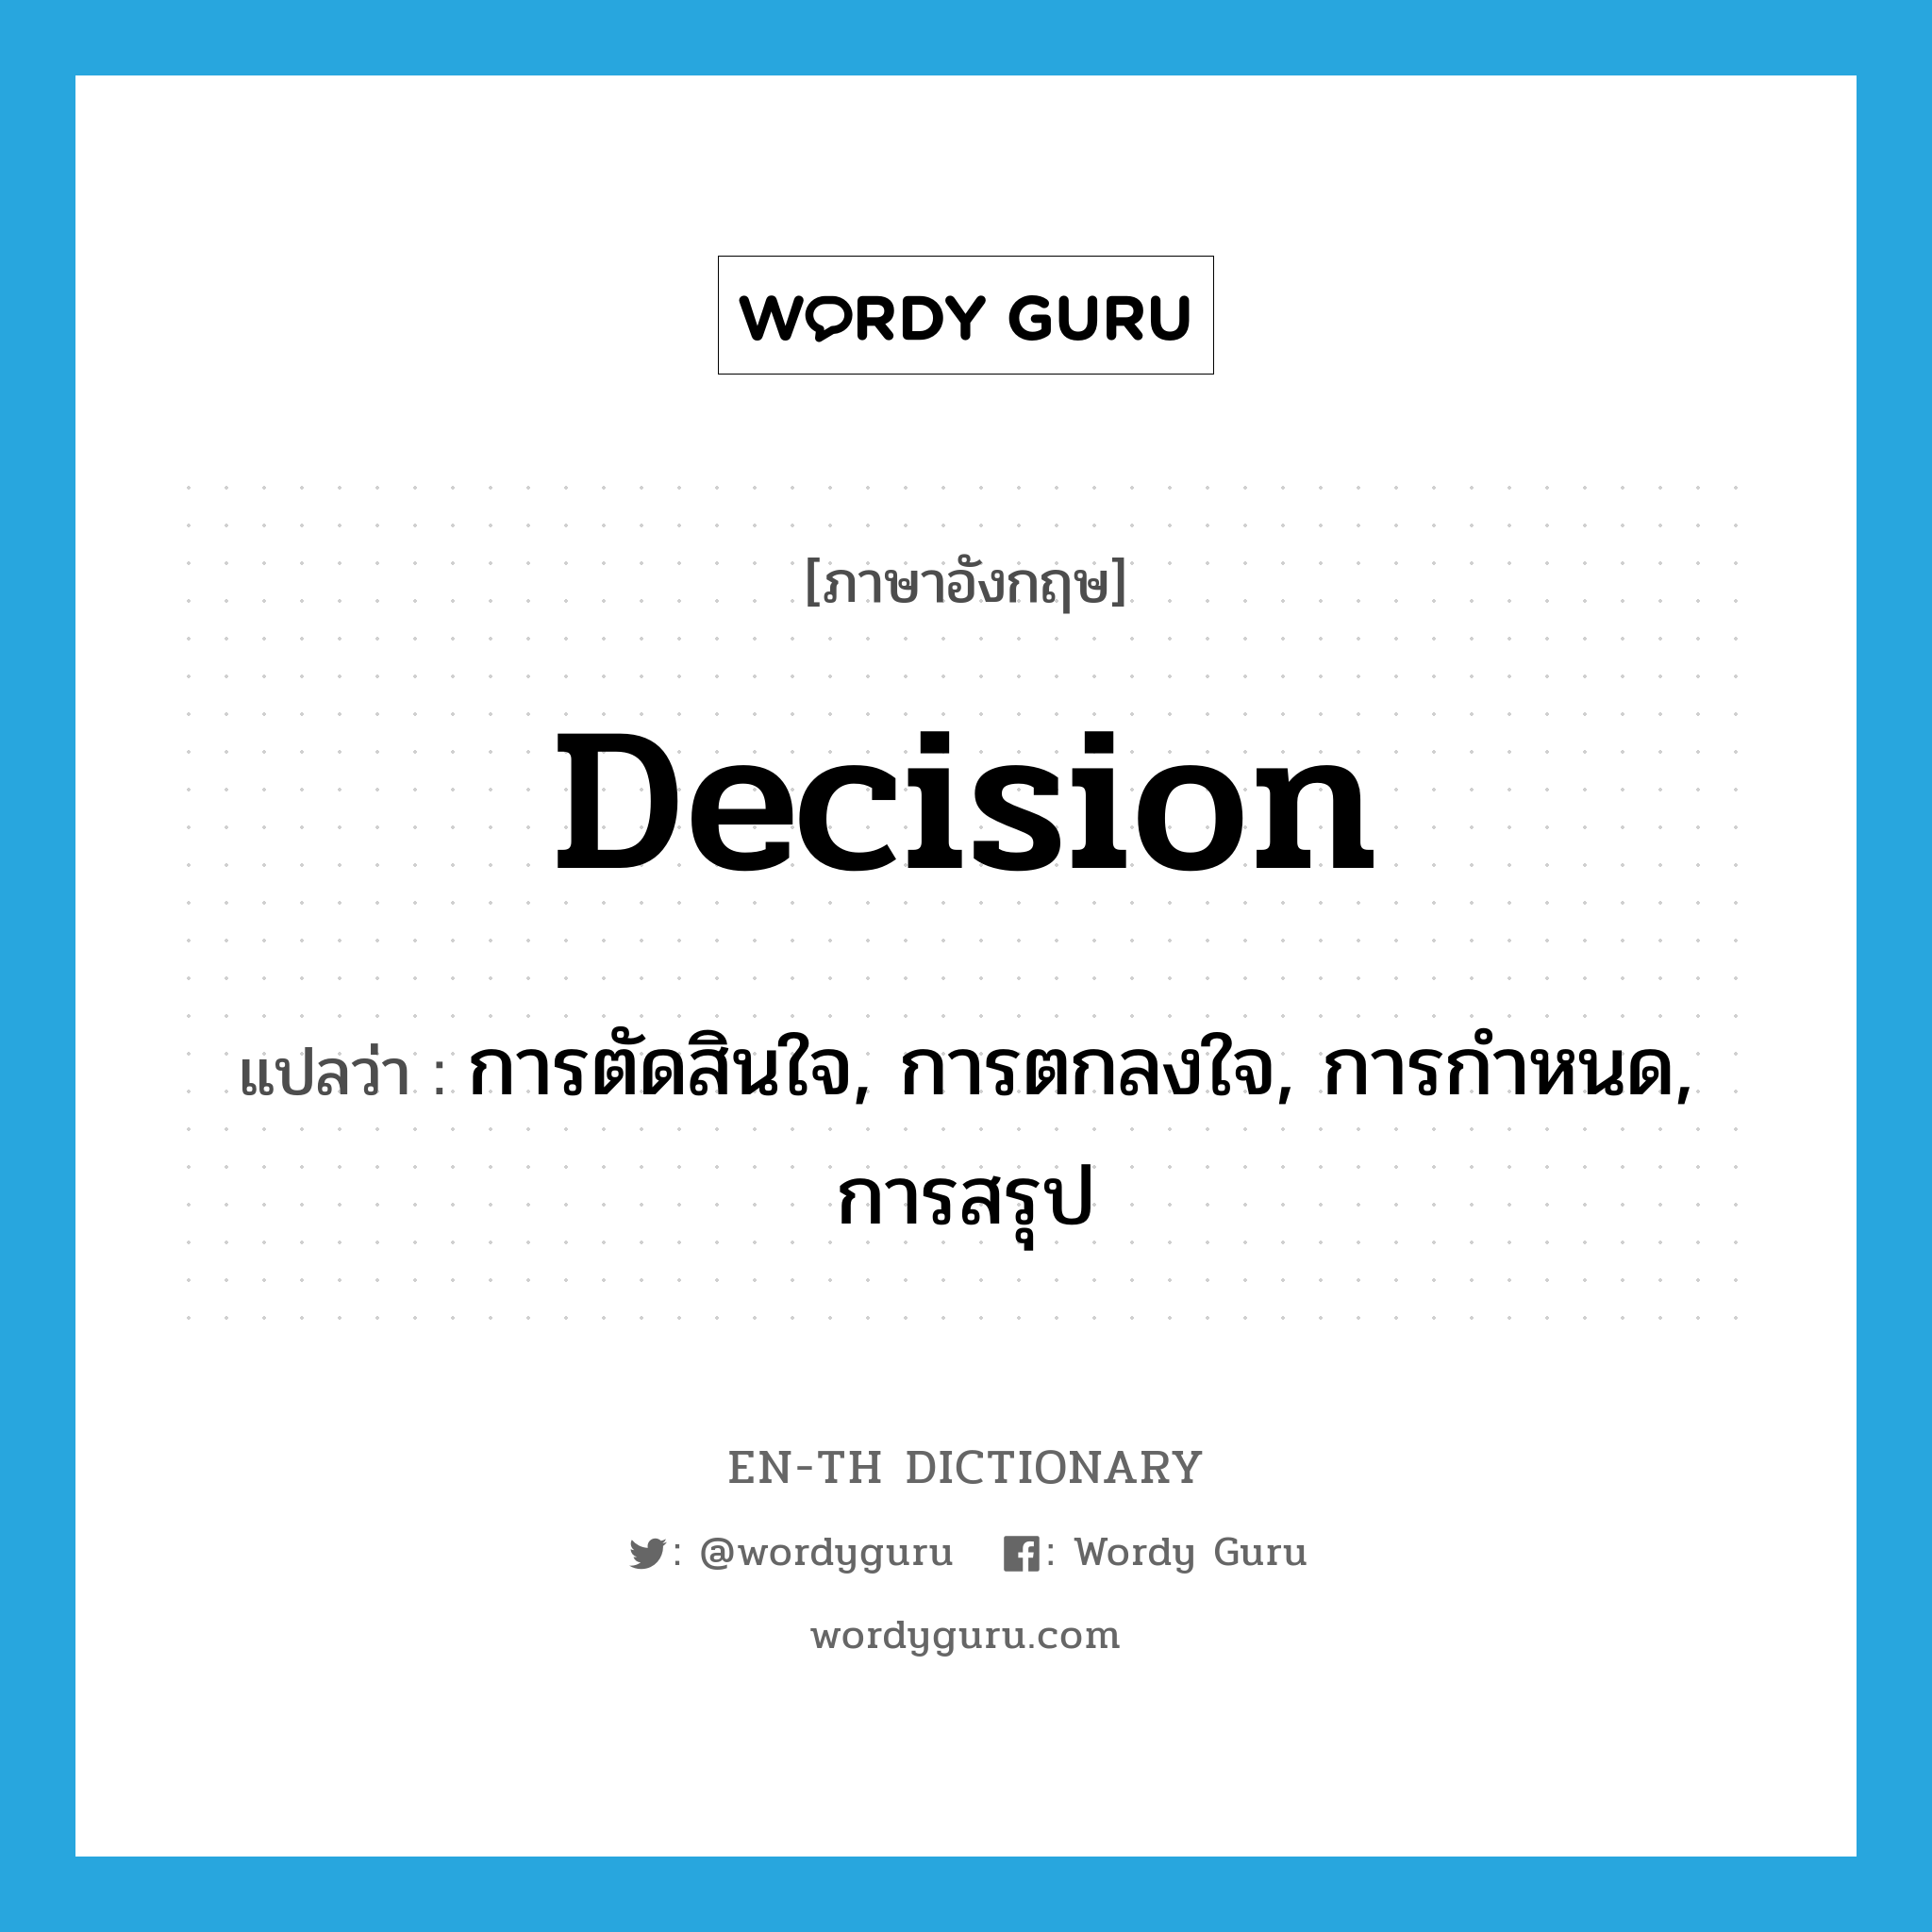 การตัดสินใจ, การตกลงใจ, การกำหนด, การสรุป ภาษาอังกฤษ?, คำศัพท์ภาษาอังกฤษ การตัดสินใจ, การตกลงใจ, การกำหนด, การสรุป แปลว่า decision ประเภท N หมวด N